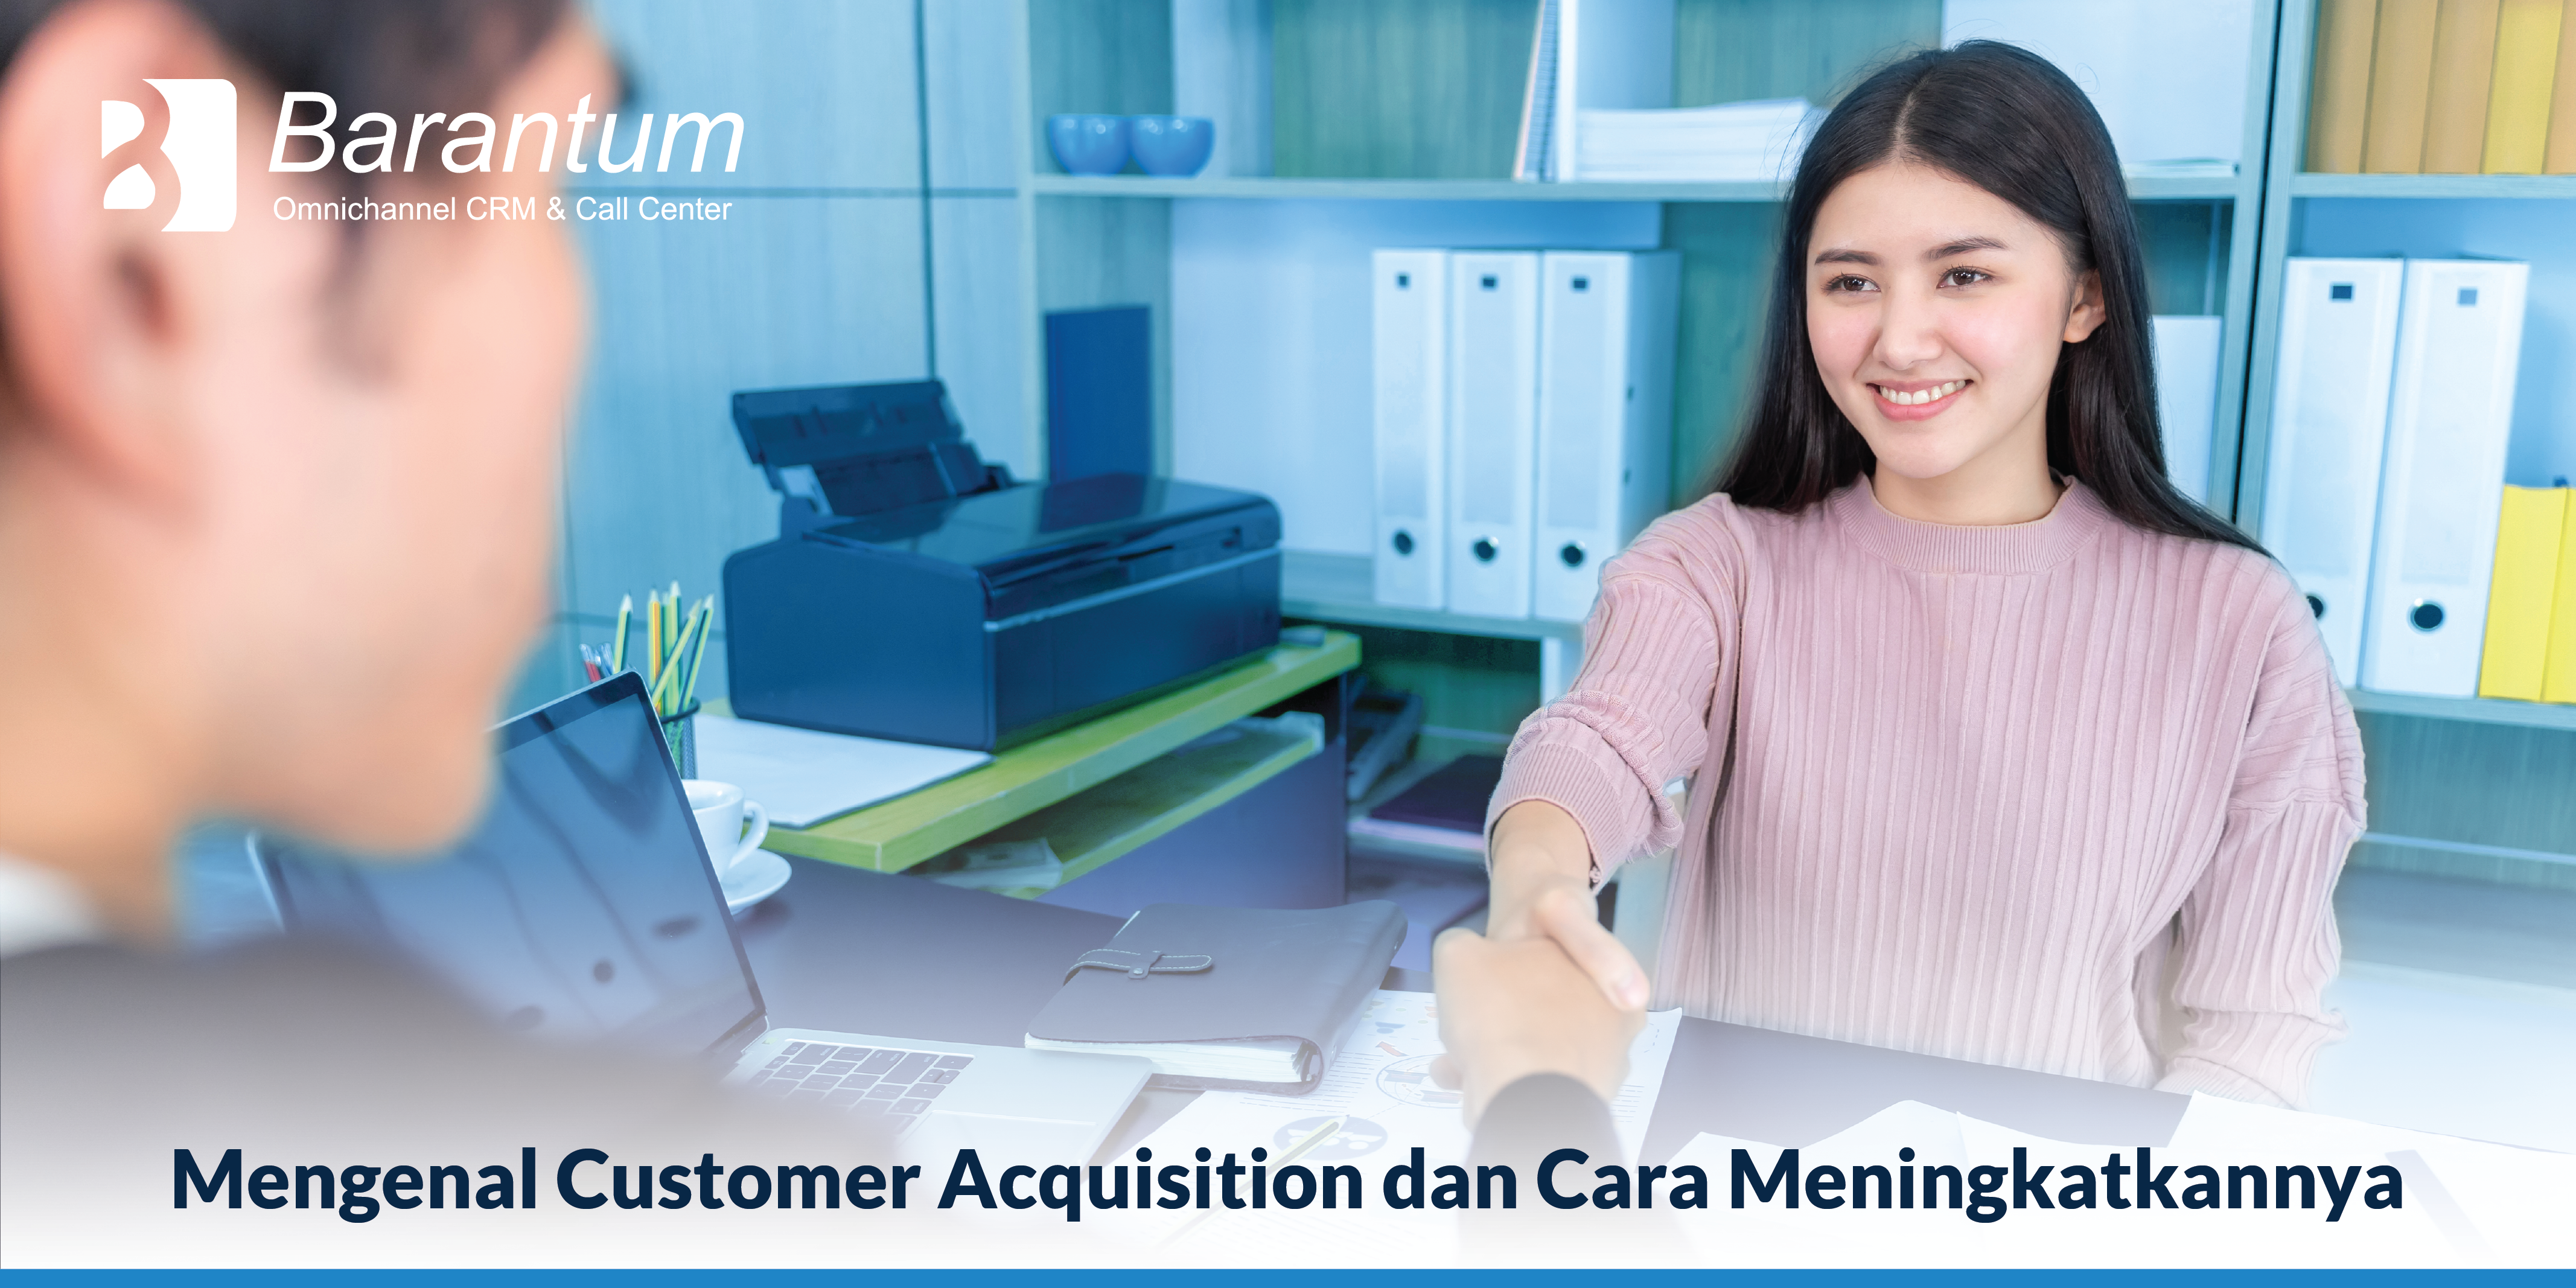 customer acquisition adalah